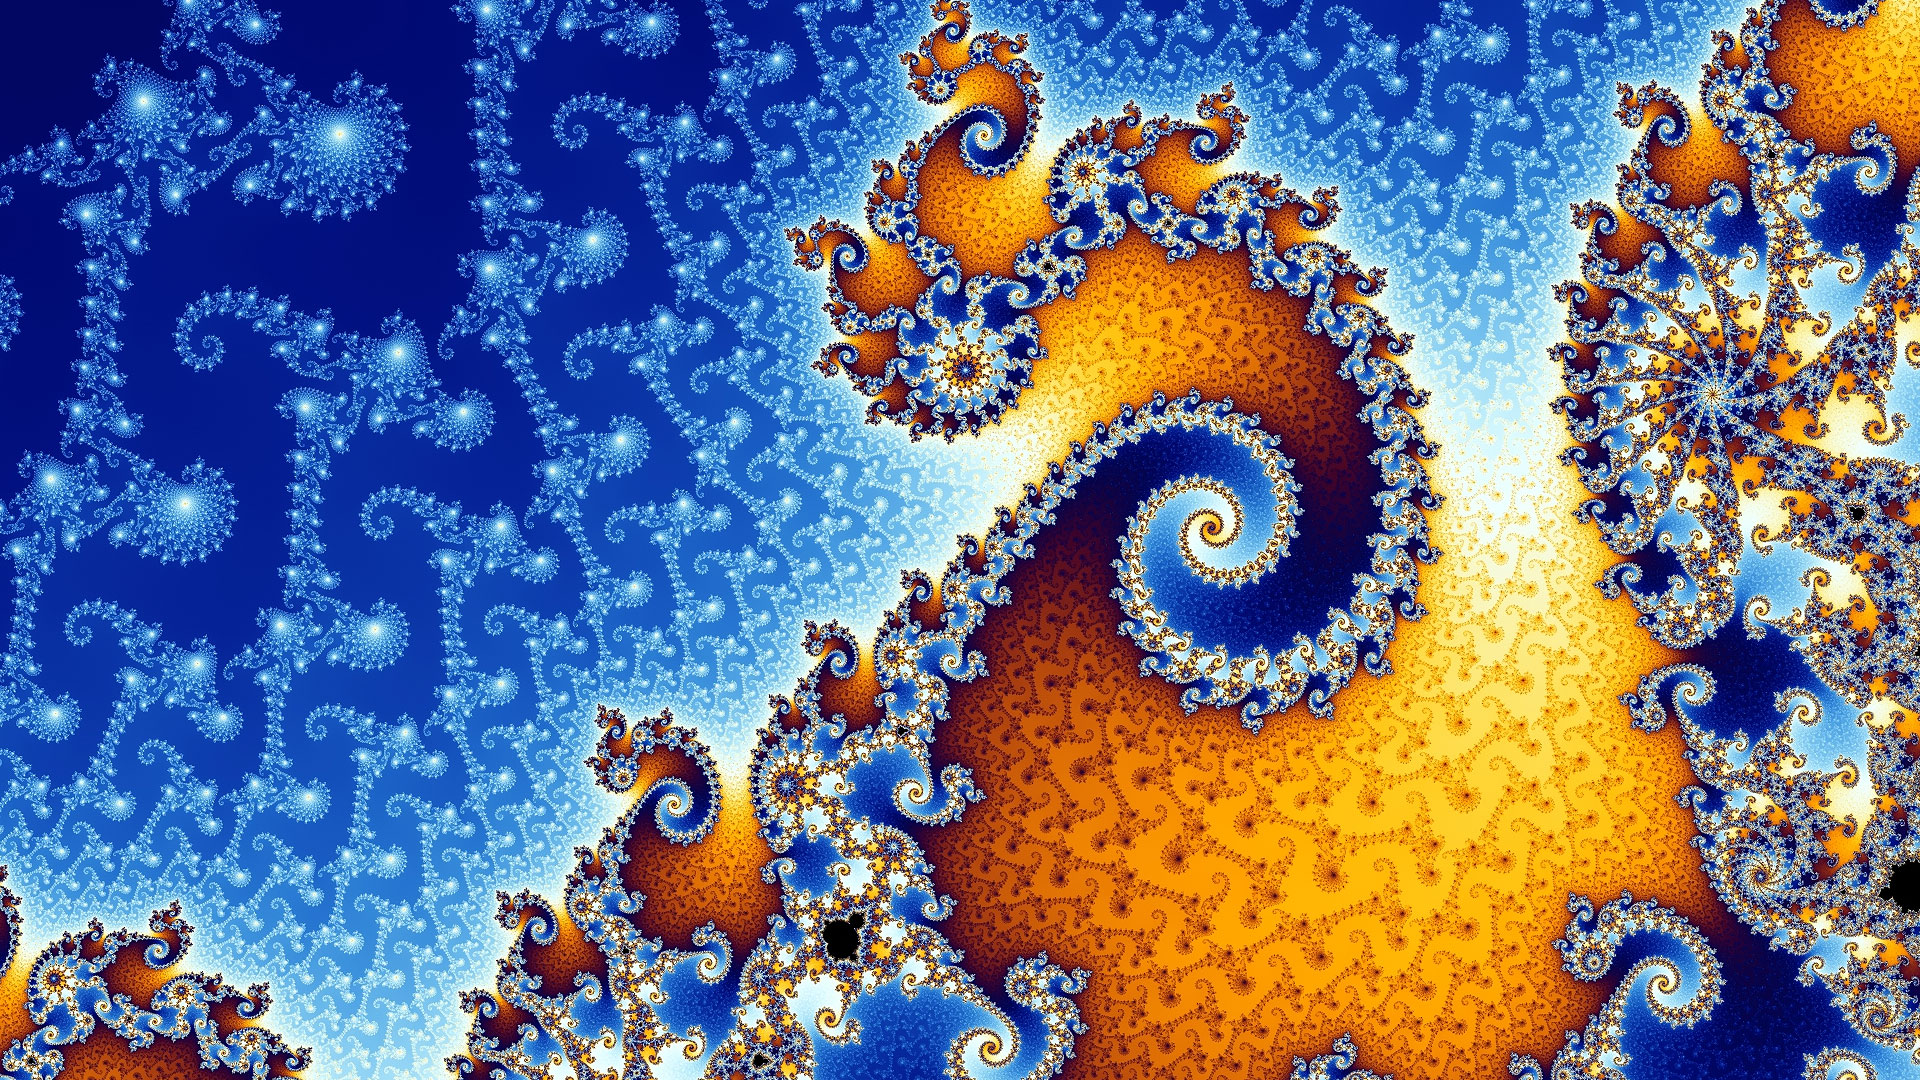 Les somptueuses spirales de Mandelbrot. L’ensemble de Mandelbrot est une collection de points contenant des aires, des courbes lisses, des filaments, etc. Cette fractale forme des figures d’une beauté fascinante. L’image en montre un détail : les tons bleus et orange dominent et forment des spirales ressemblant à une coquille d’escargot. © Futura